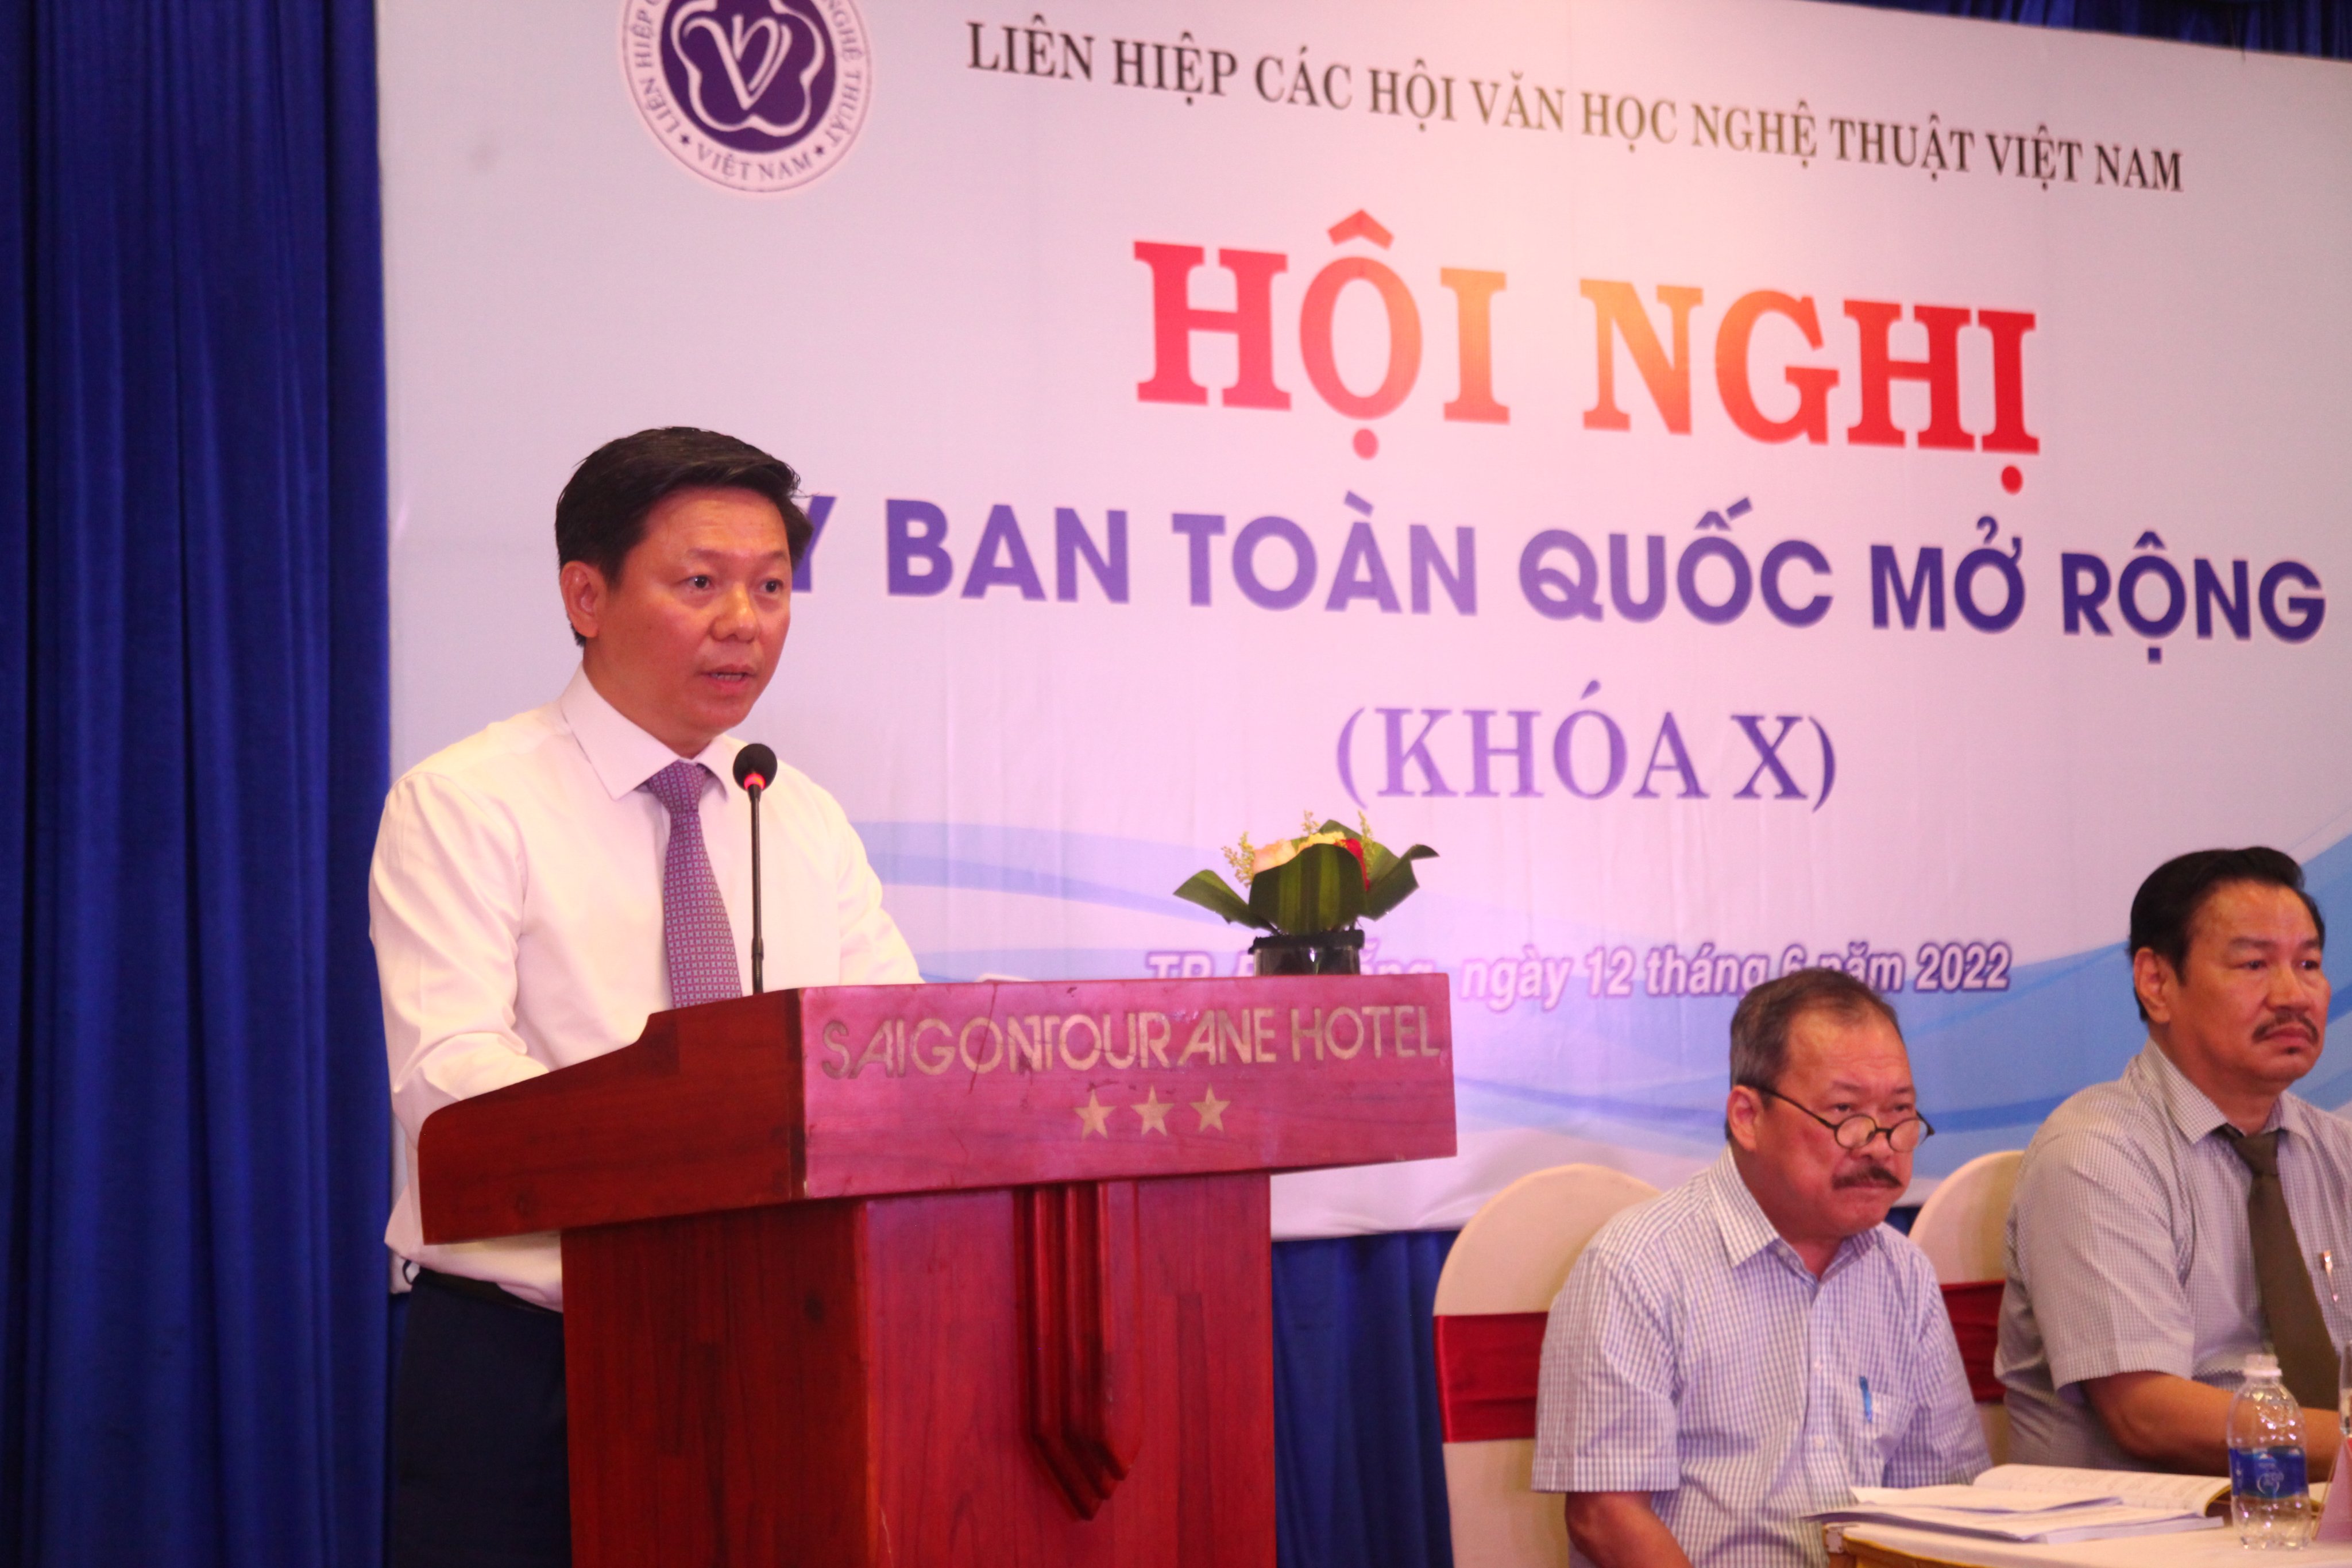 Đoàn kết xây dựng Liên hiệp các Hội VHNT Việt Nam trở thành tổ chức chính trị - xã hội - nghề nghiệp vững mạnh toàn diện - 3